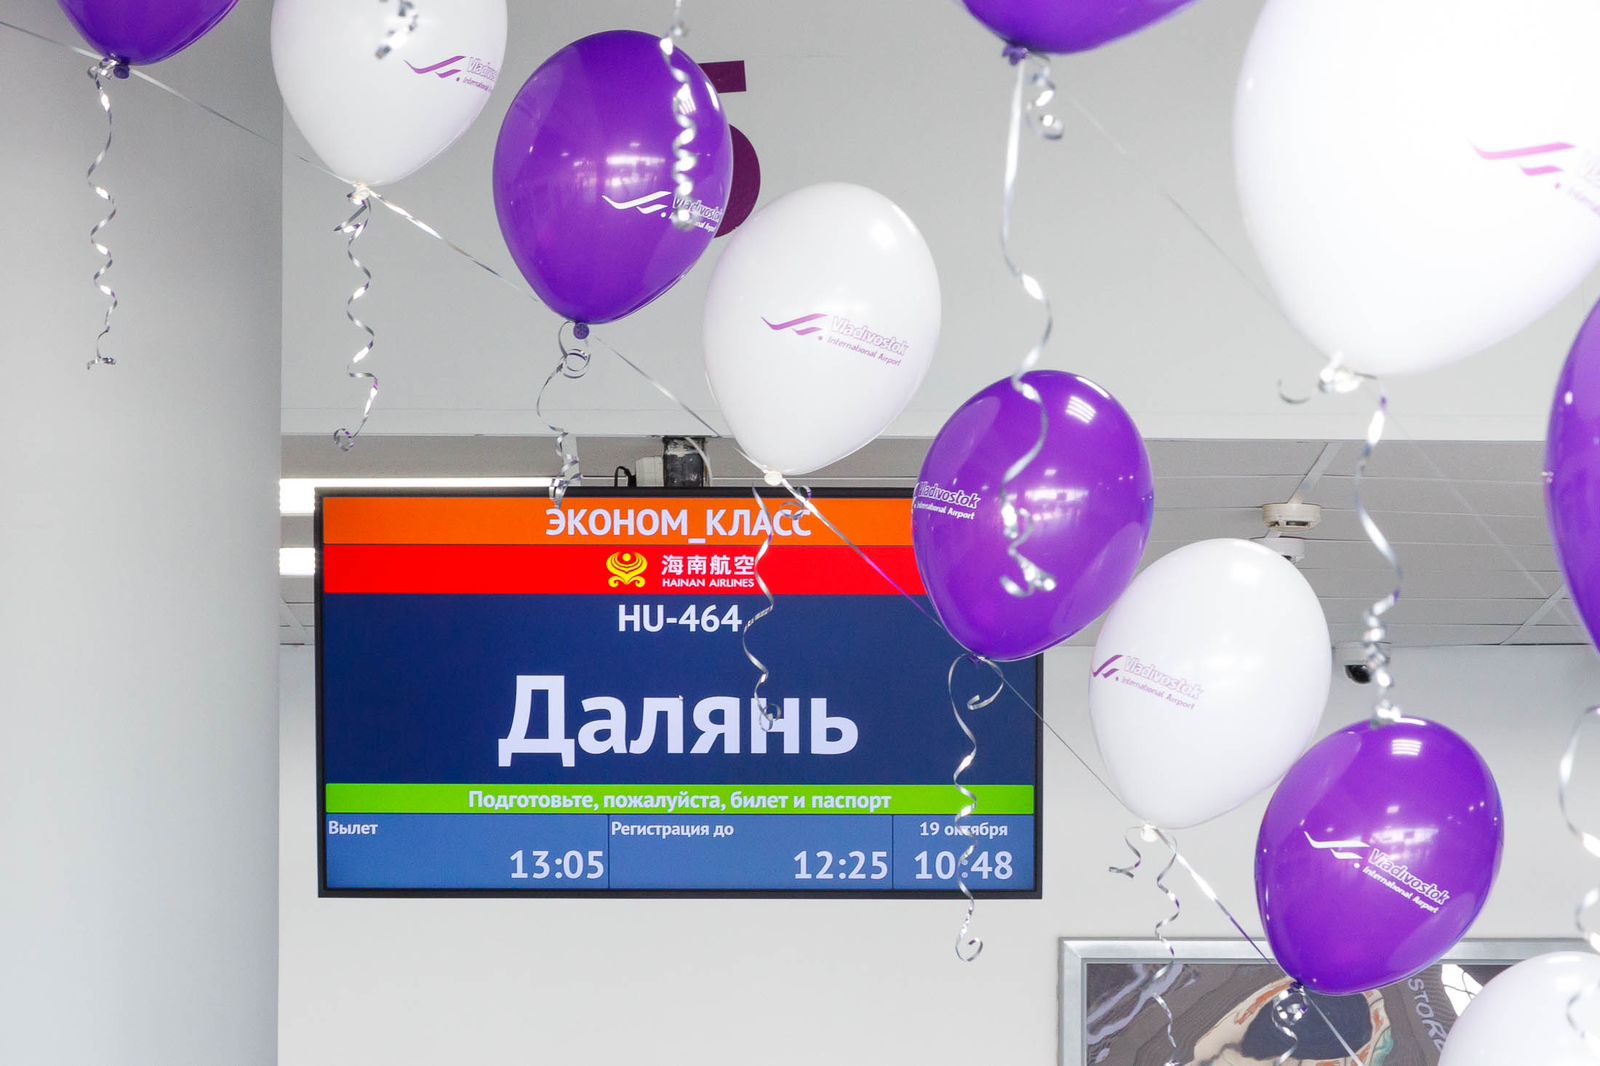 В Международном аэропорту Владивосток состоялось торжественное открытие прямого рейса в Далянь